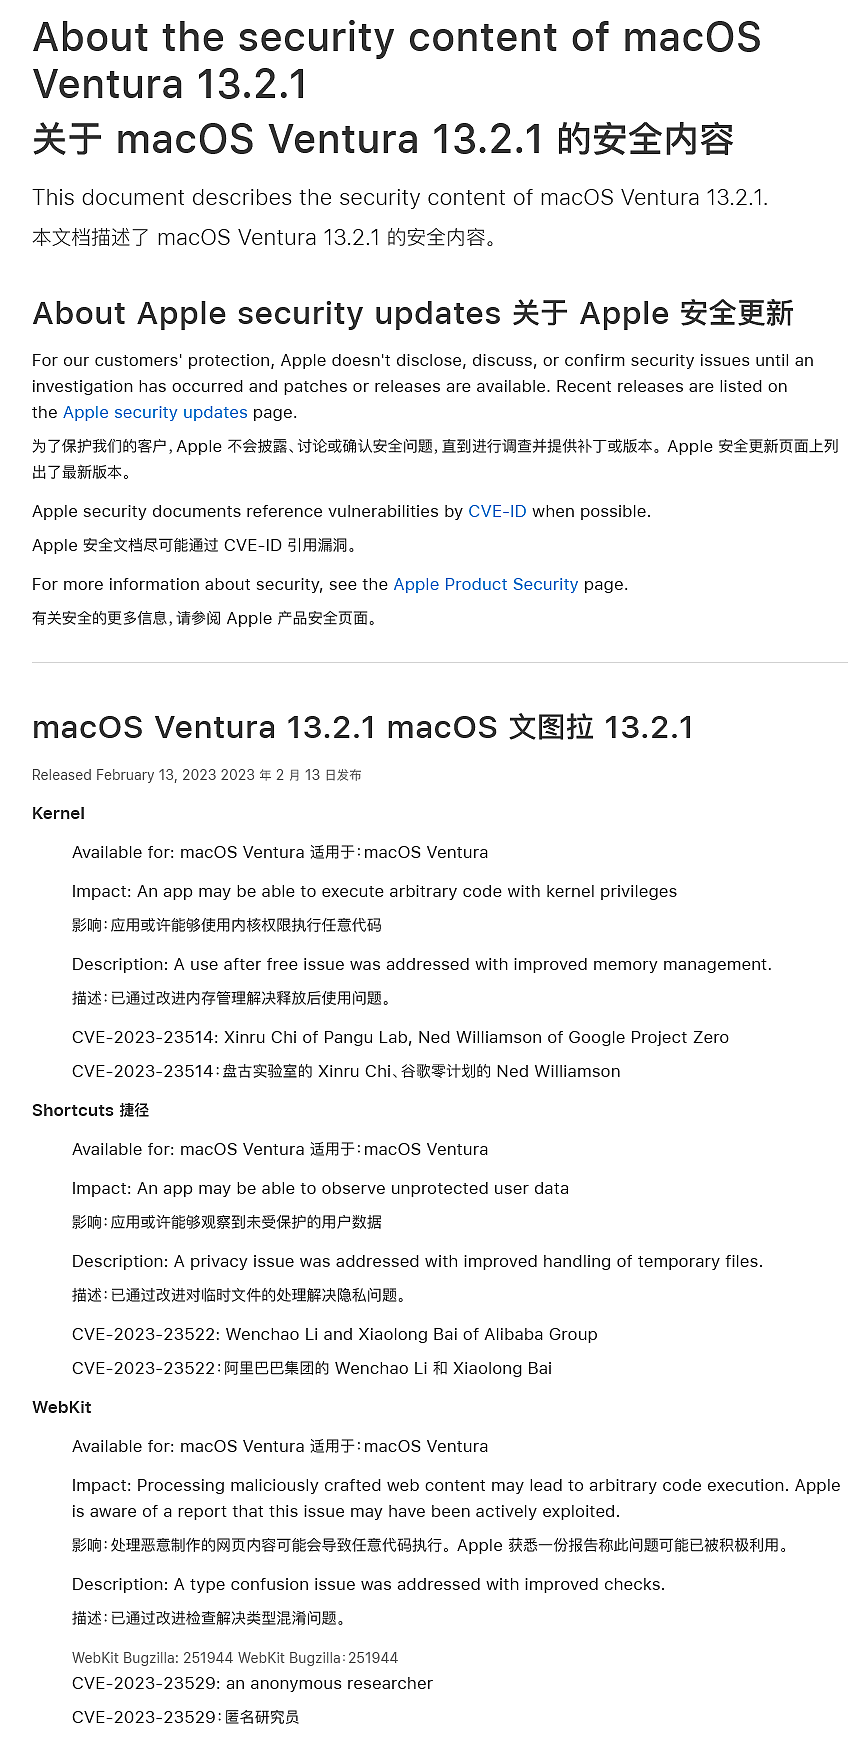 推荐尽快升级：苹果 iOS 16.3.1 和 macOS 13.2.1 修复了已被黑客利用的高危漏洞 - 2